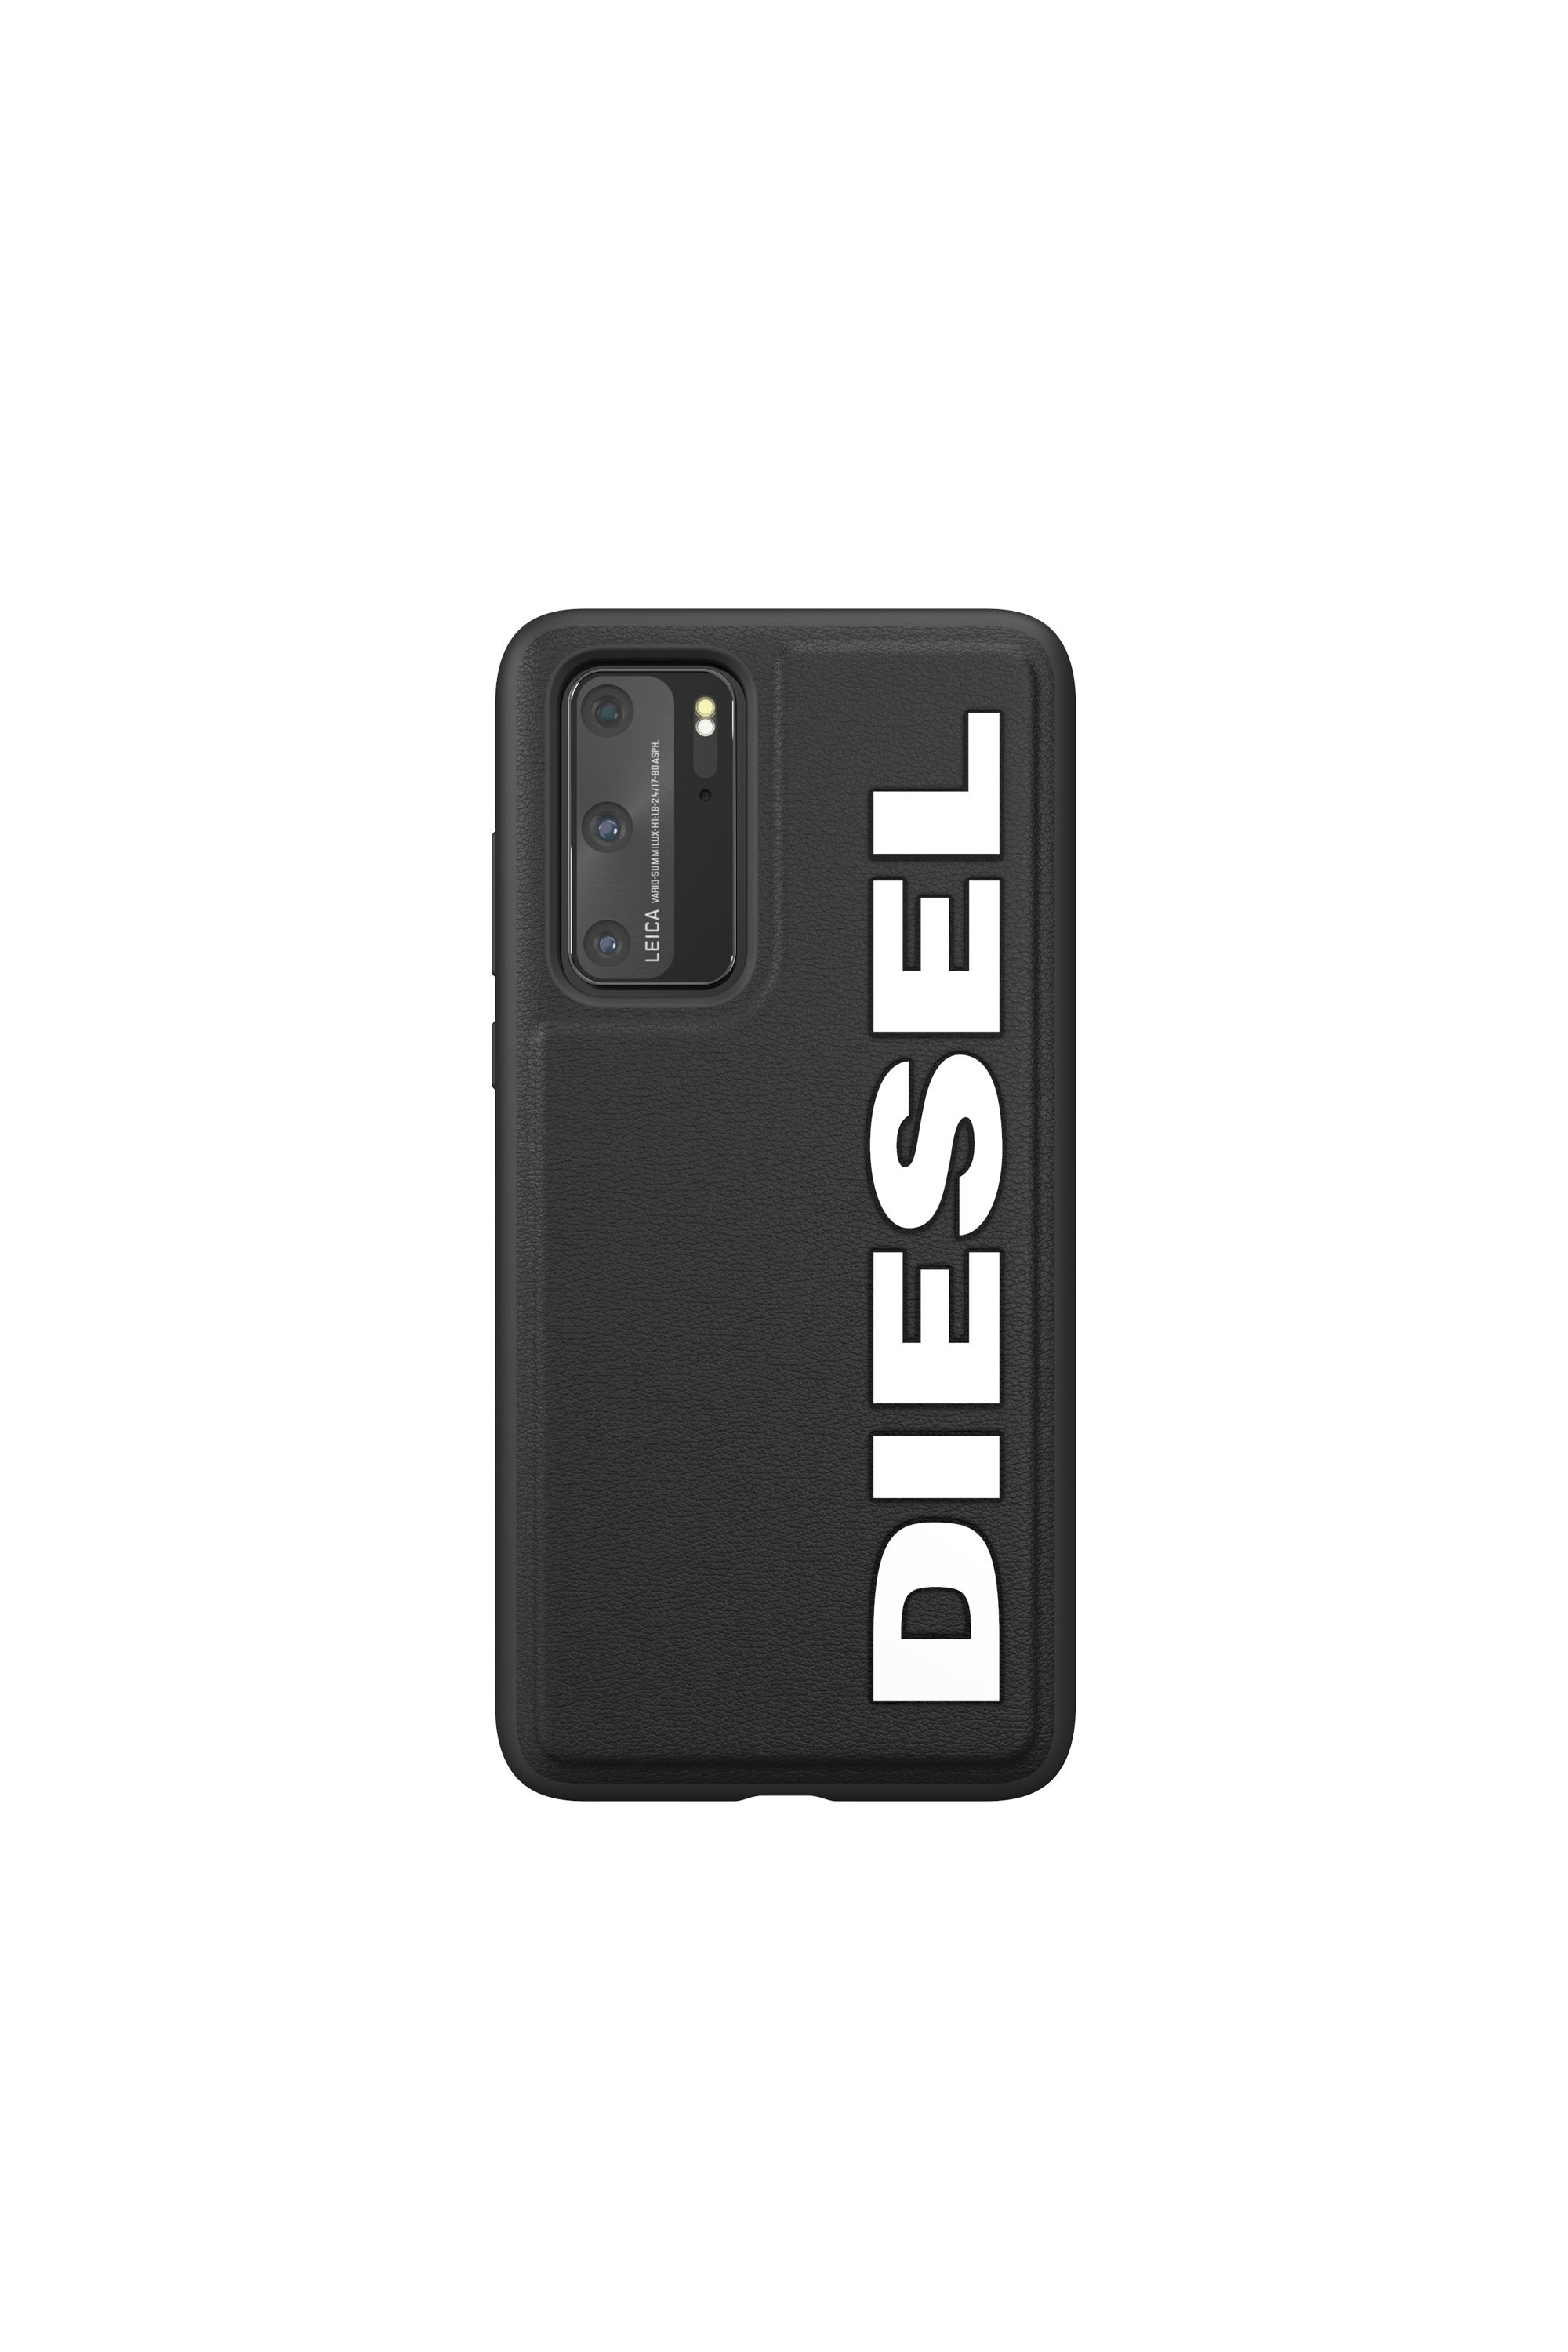 Diesel - 42495, Black - Image 2